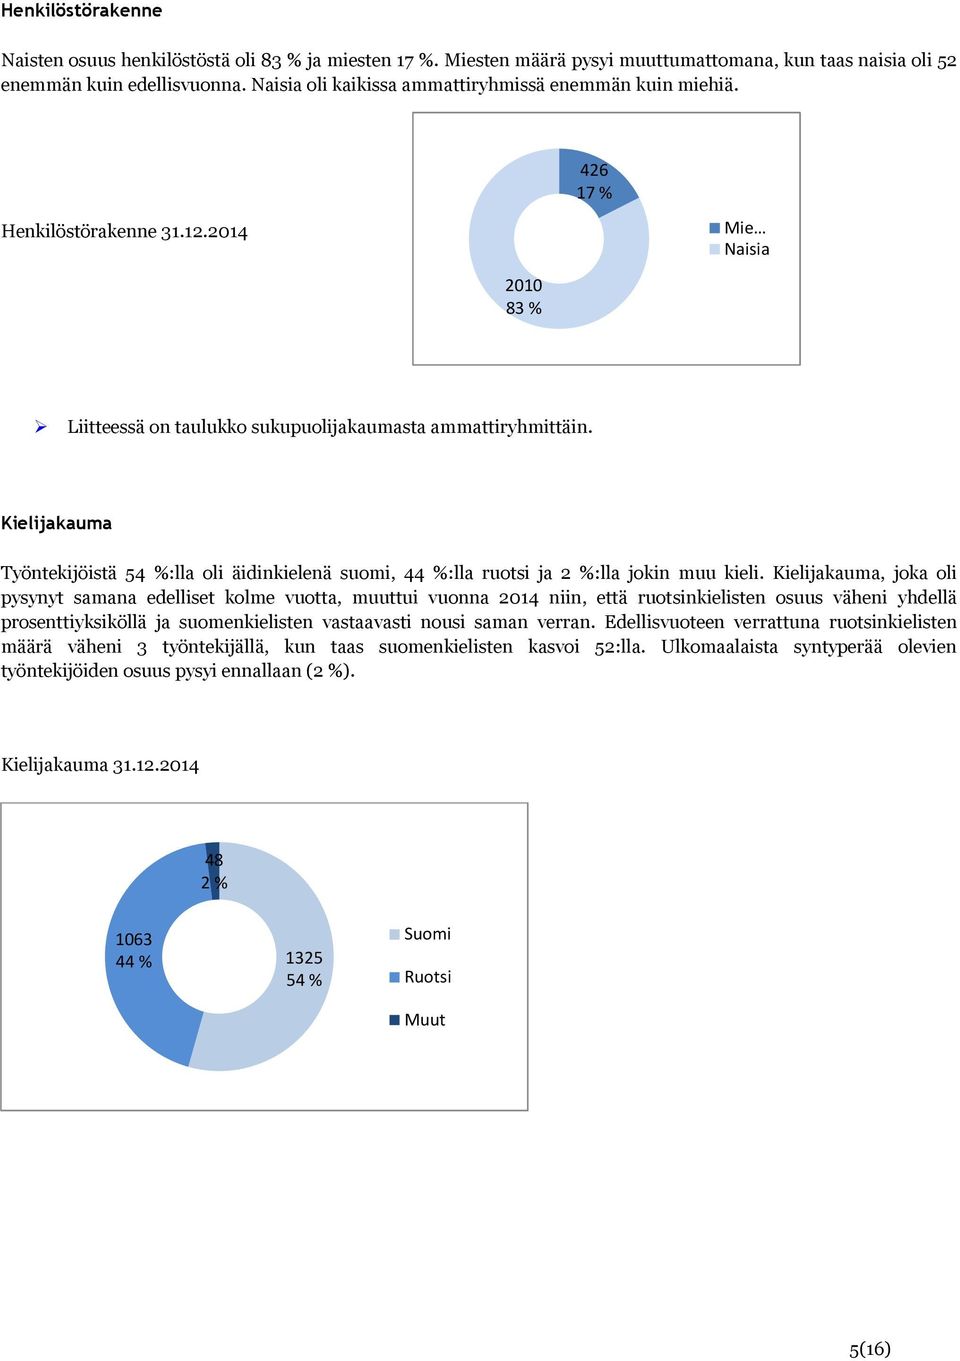 Kielijakauma Työntekijöistä 54 %:lla oli äidinkielenä suomi, 44 %:lla ruotsi ja 2 %:lla jokin muu kieli.